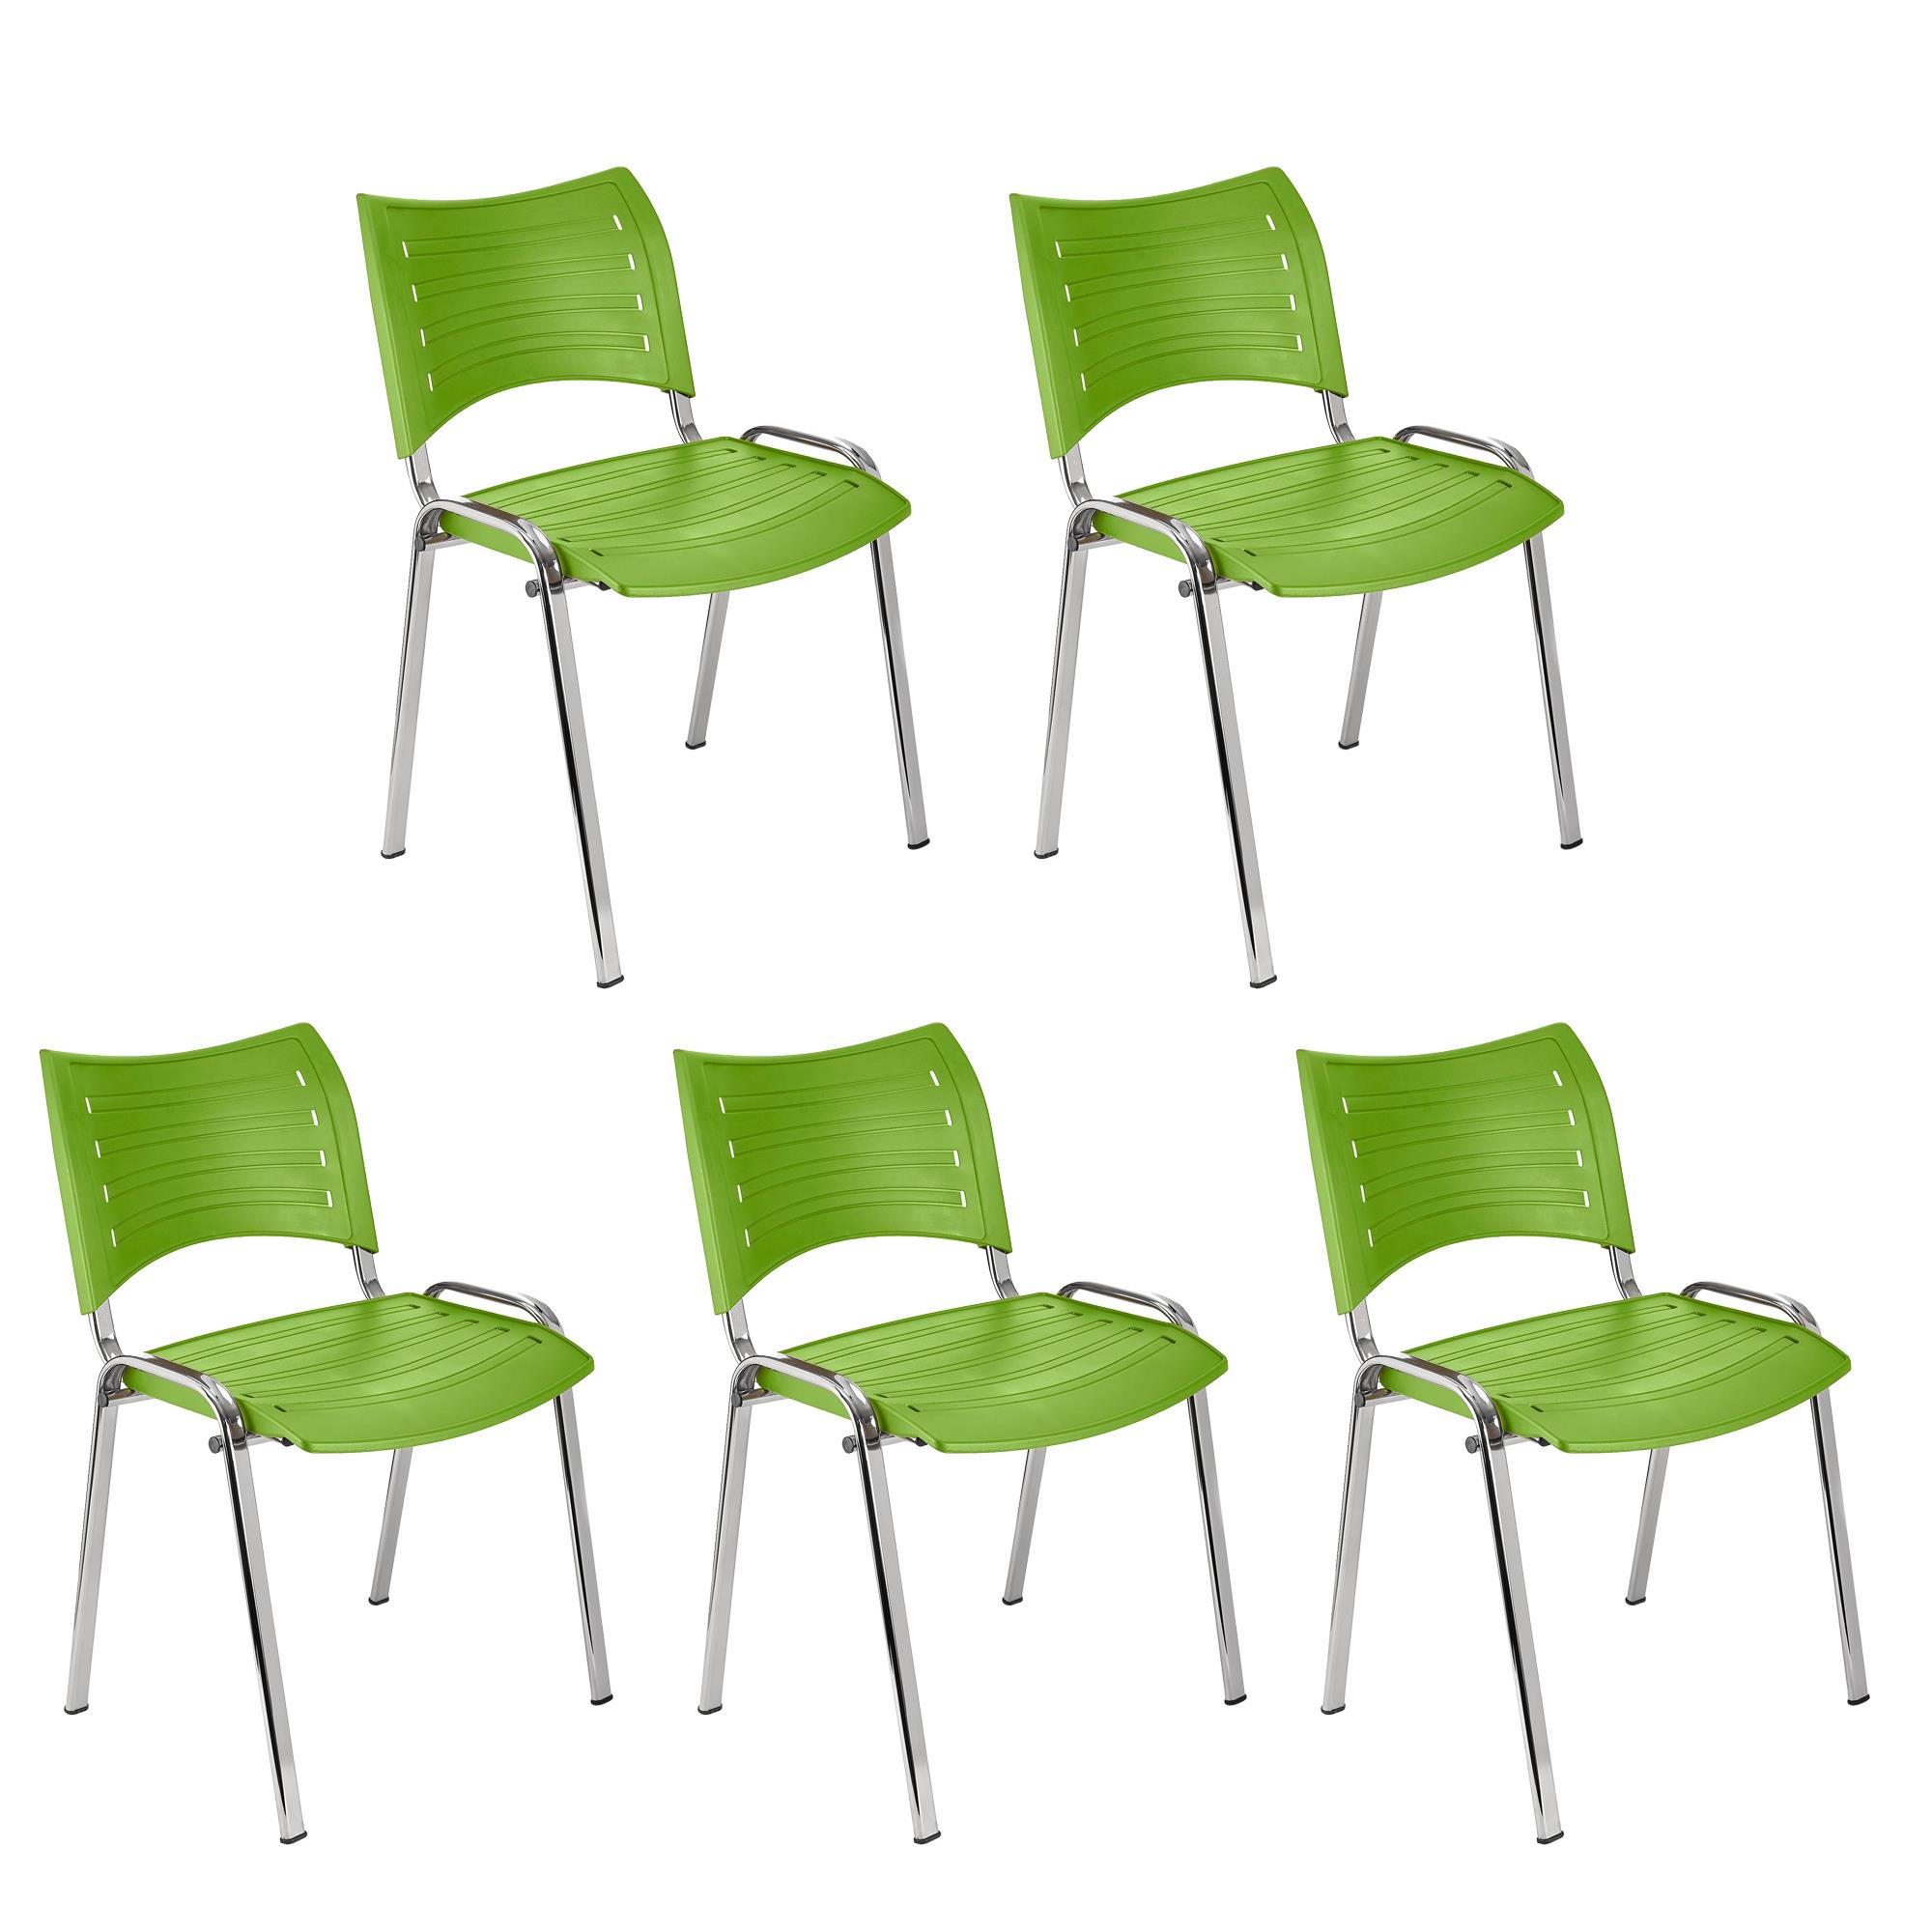 Lote 5 Cadeiras de Visita ELVA, Confortável e Prática, Pernas Cromadas, Cor Verde